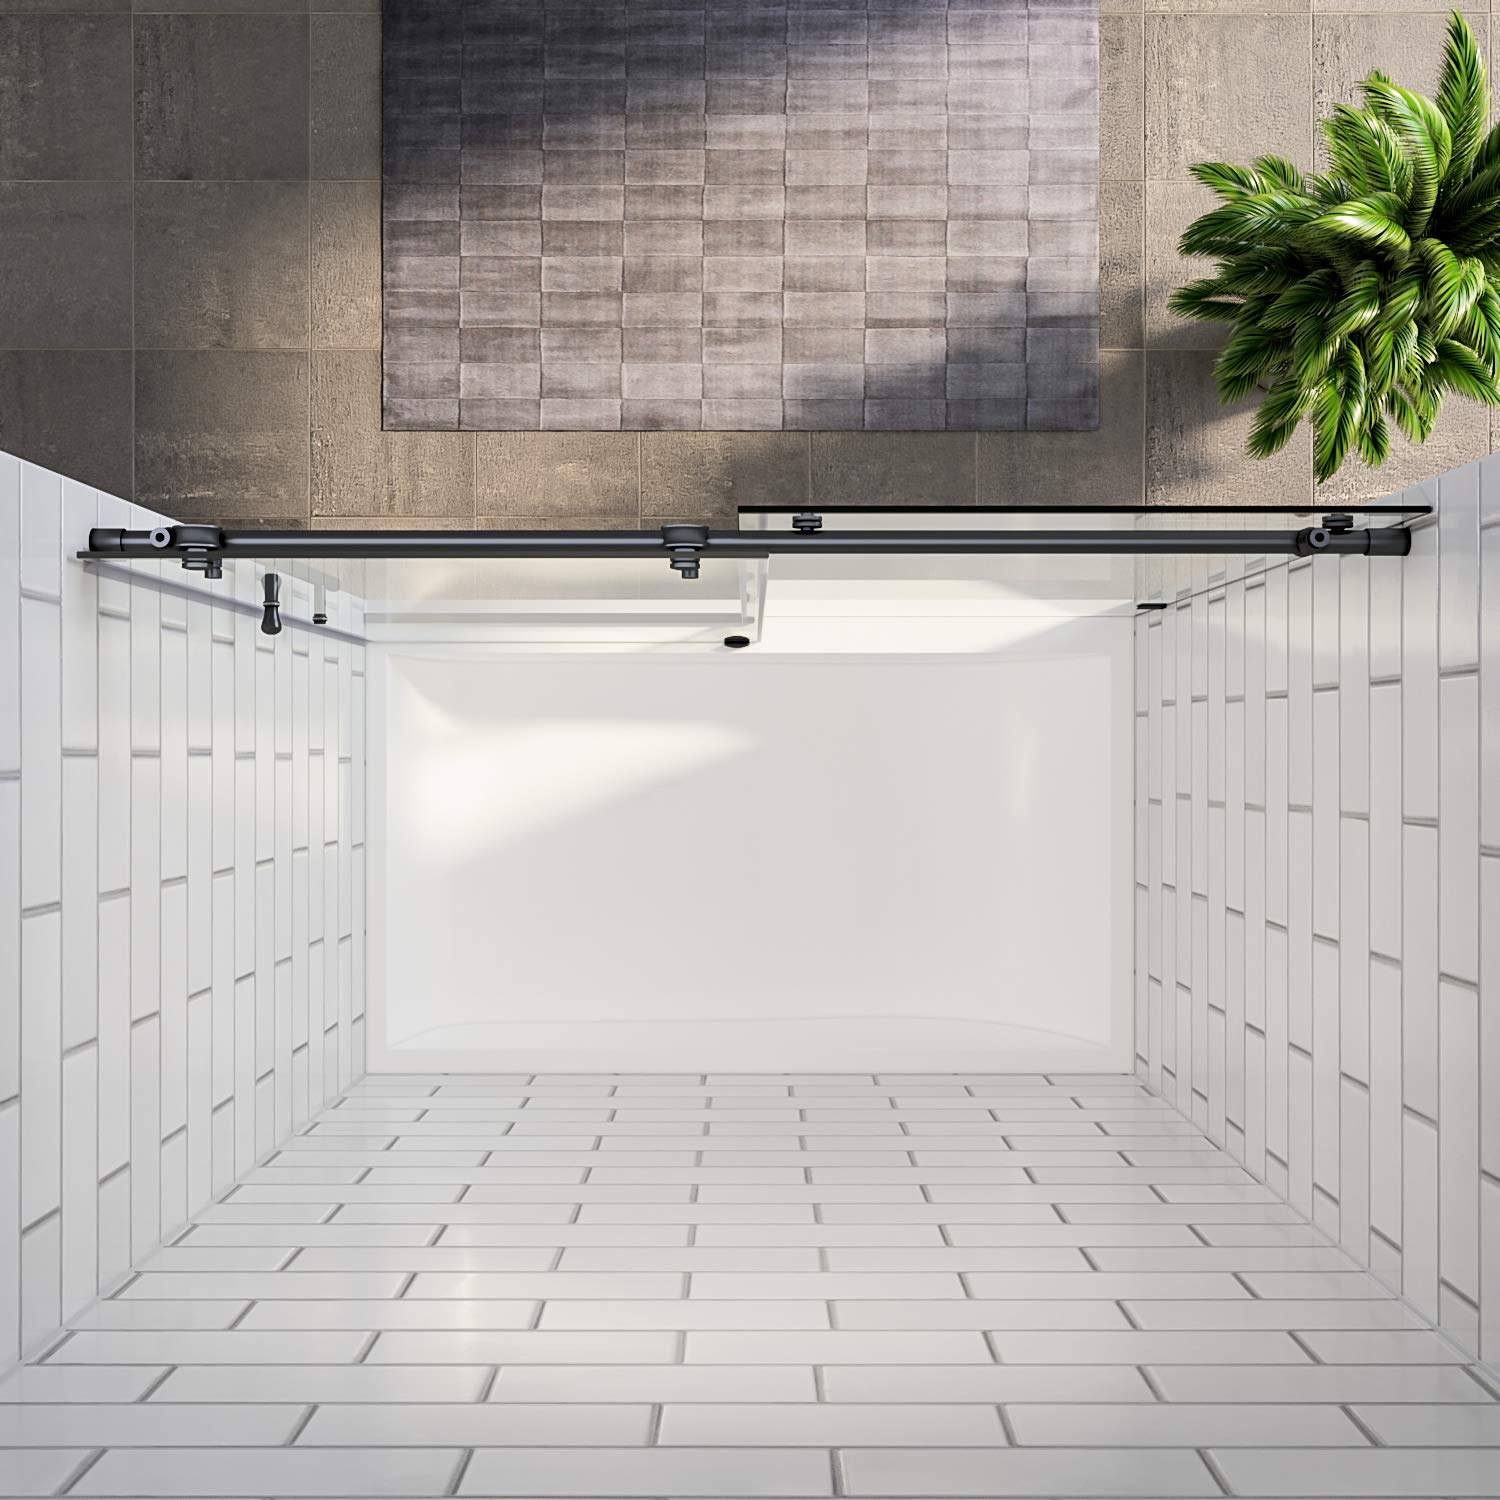 SUNNY SHOWER 60 in. W x 62 in. H Frameless Black Finish Bathtub Sliding Doors Overhead View